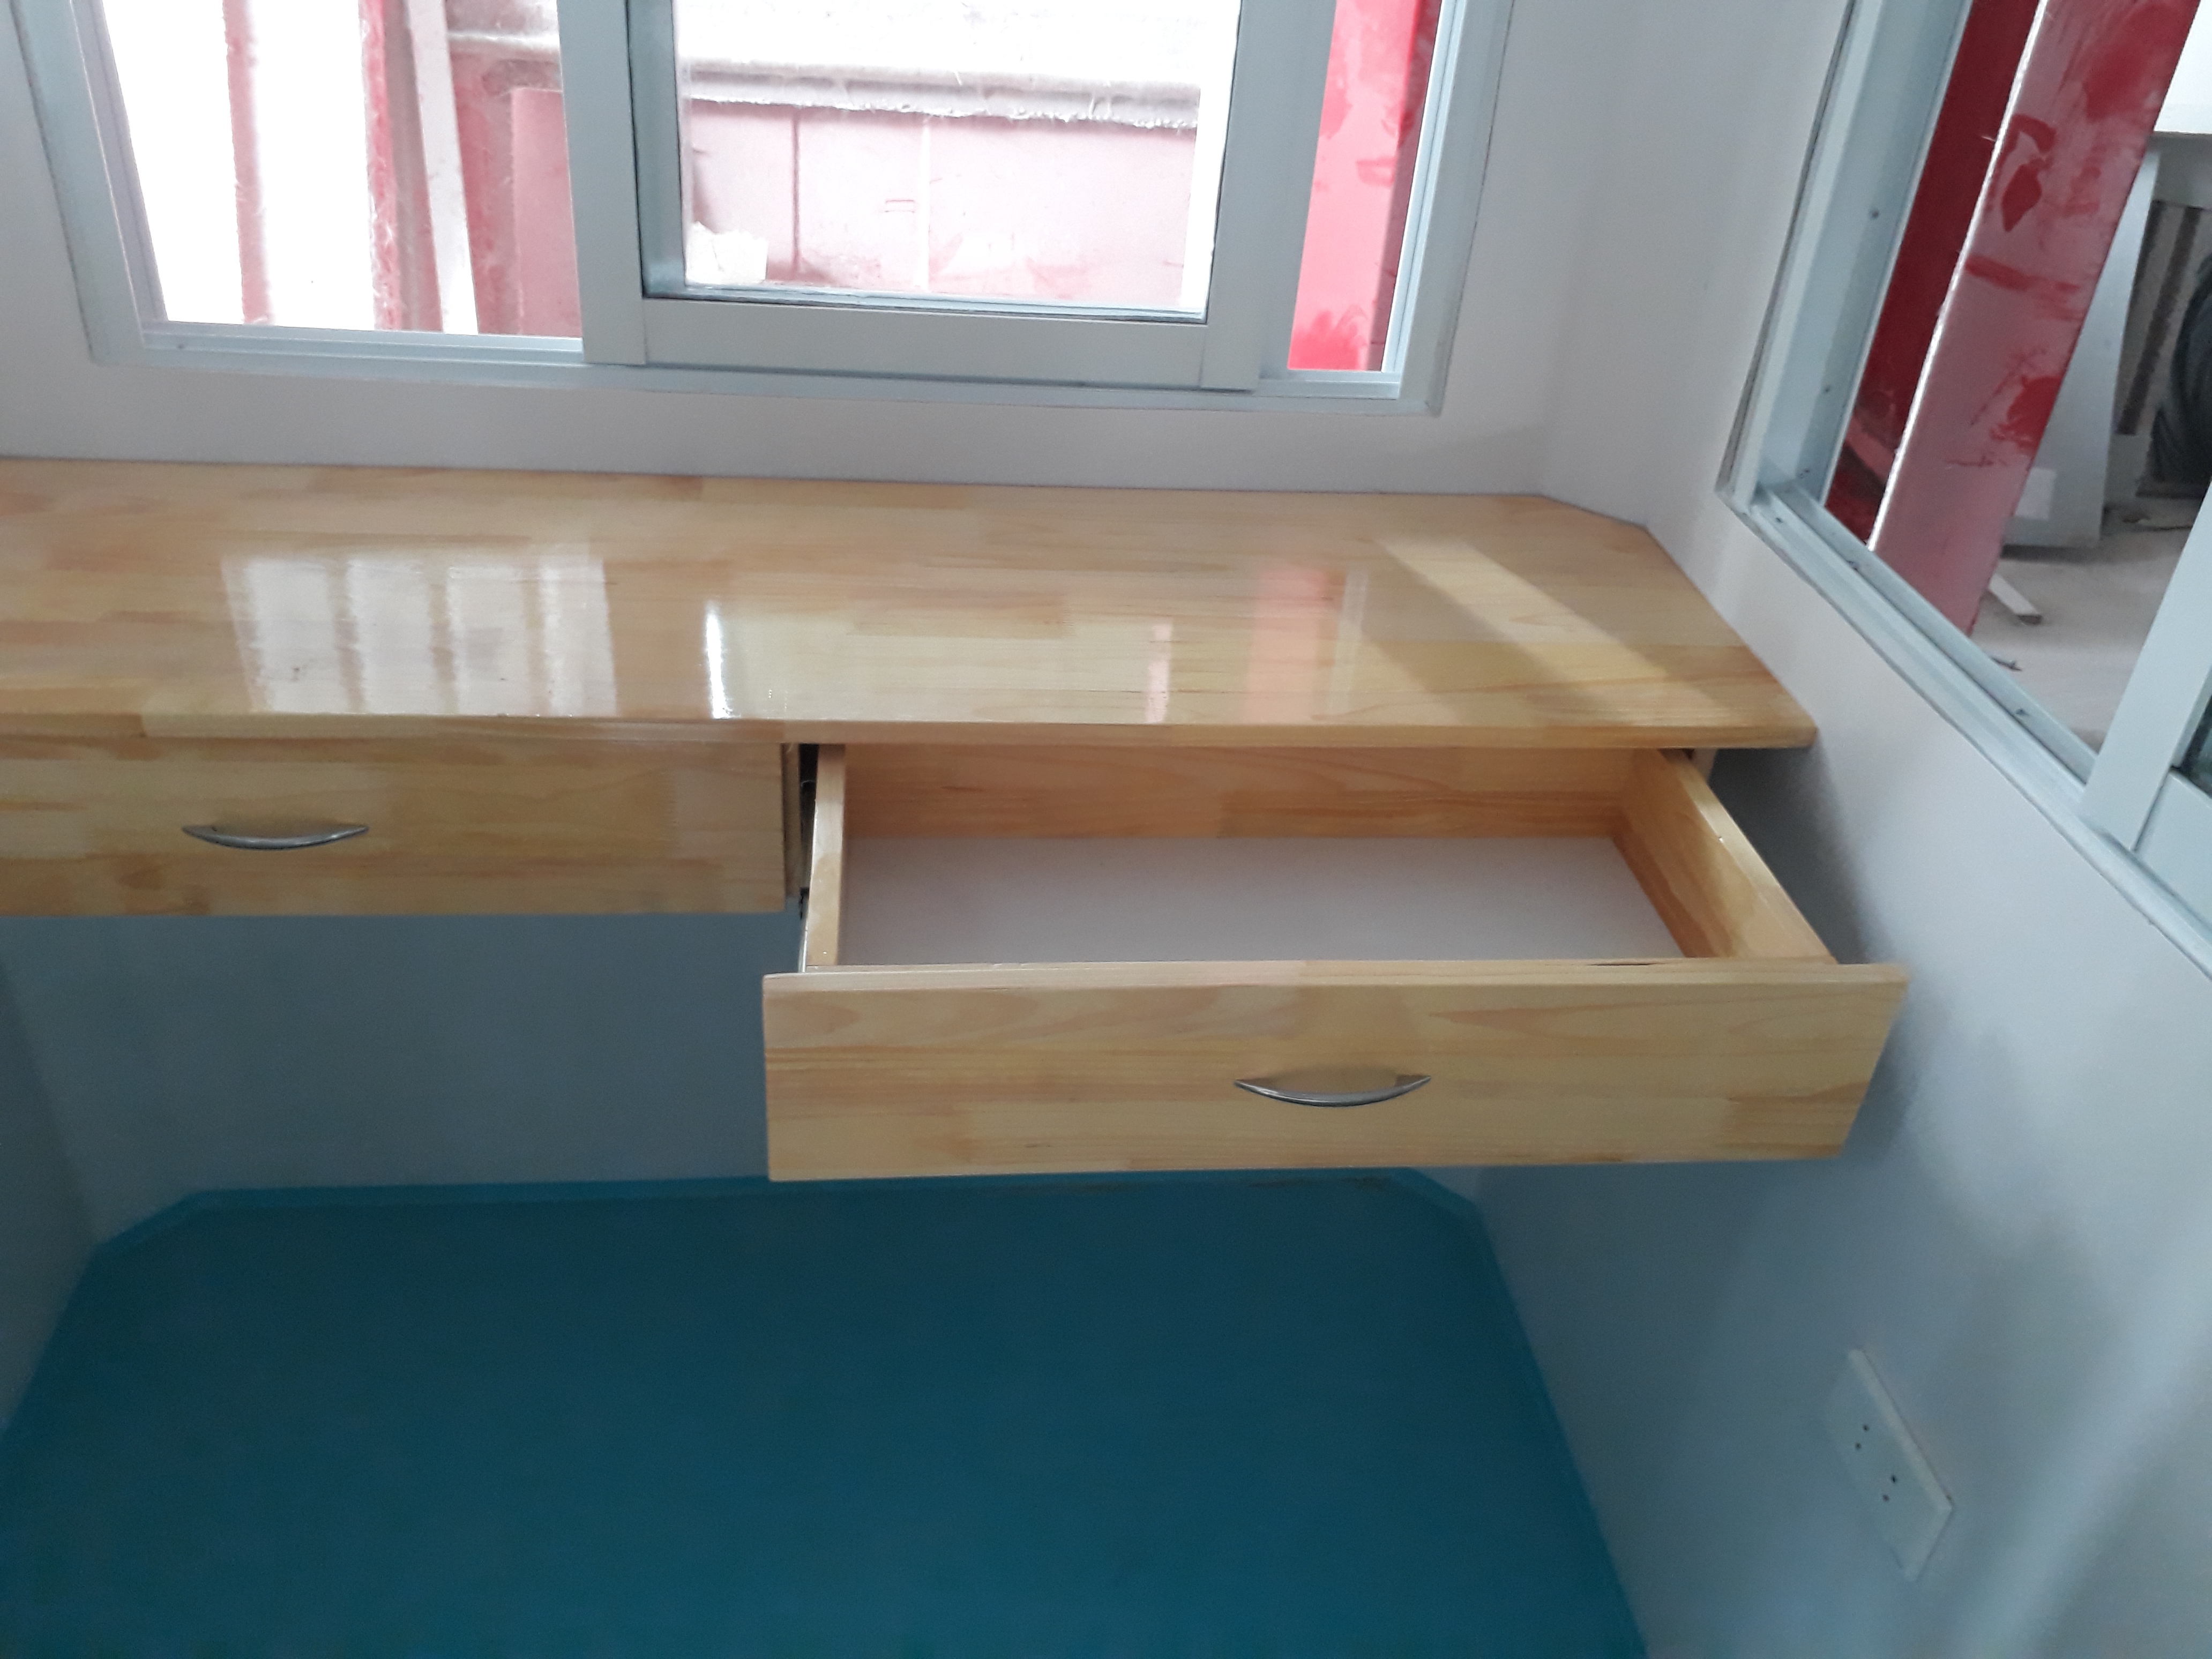 Một số cabin cỡ nhỏ dưới 1,7m chúng tôi lắp đặt thêm bàn làm việc 2 ngăn kéo bằng gỗ tự nhiên